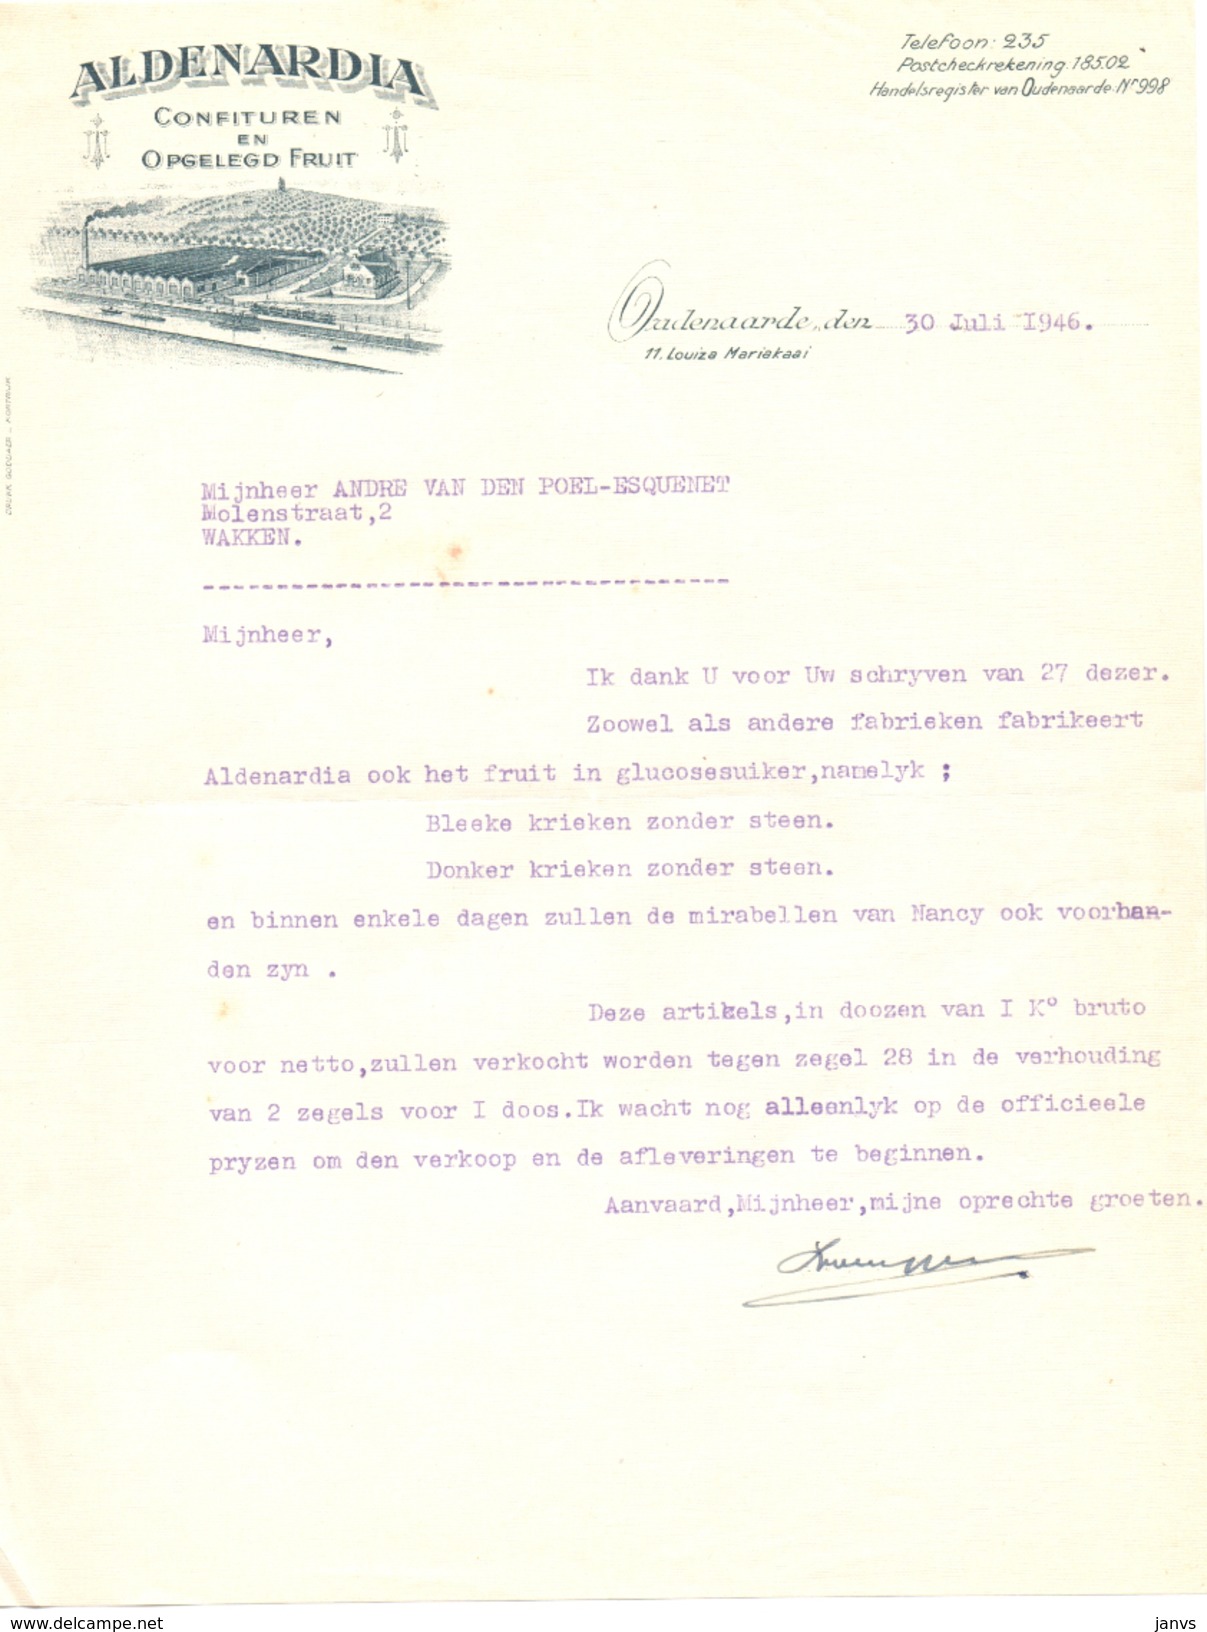 Brief Lettre - Aldenardia Confituren En Opgelegd Fruit - Oudenaarde 1946 - Voor Andre Van Den Poel - Wakken - Ambachten